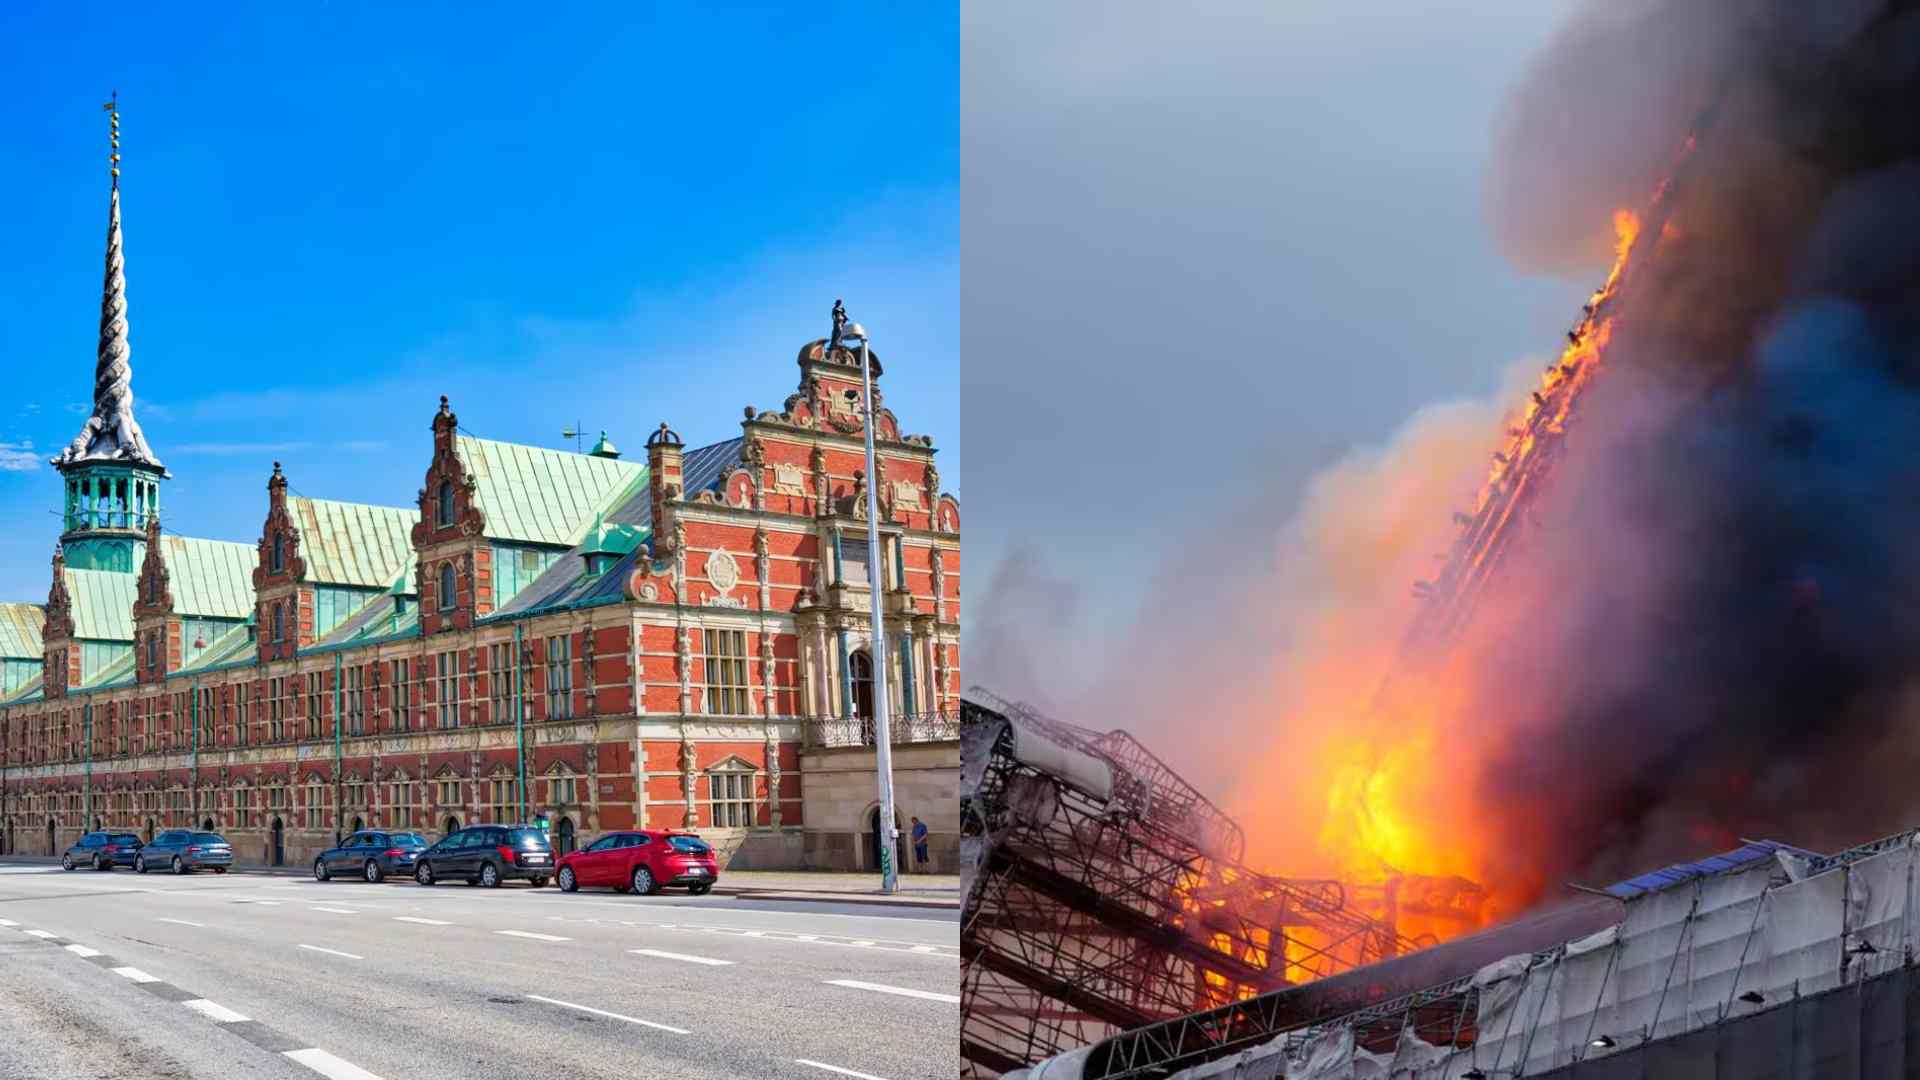 Edificio del siglo XVII se consume en llamas en Copenhague